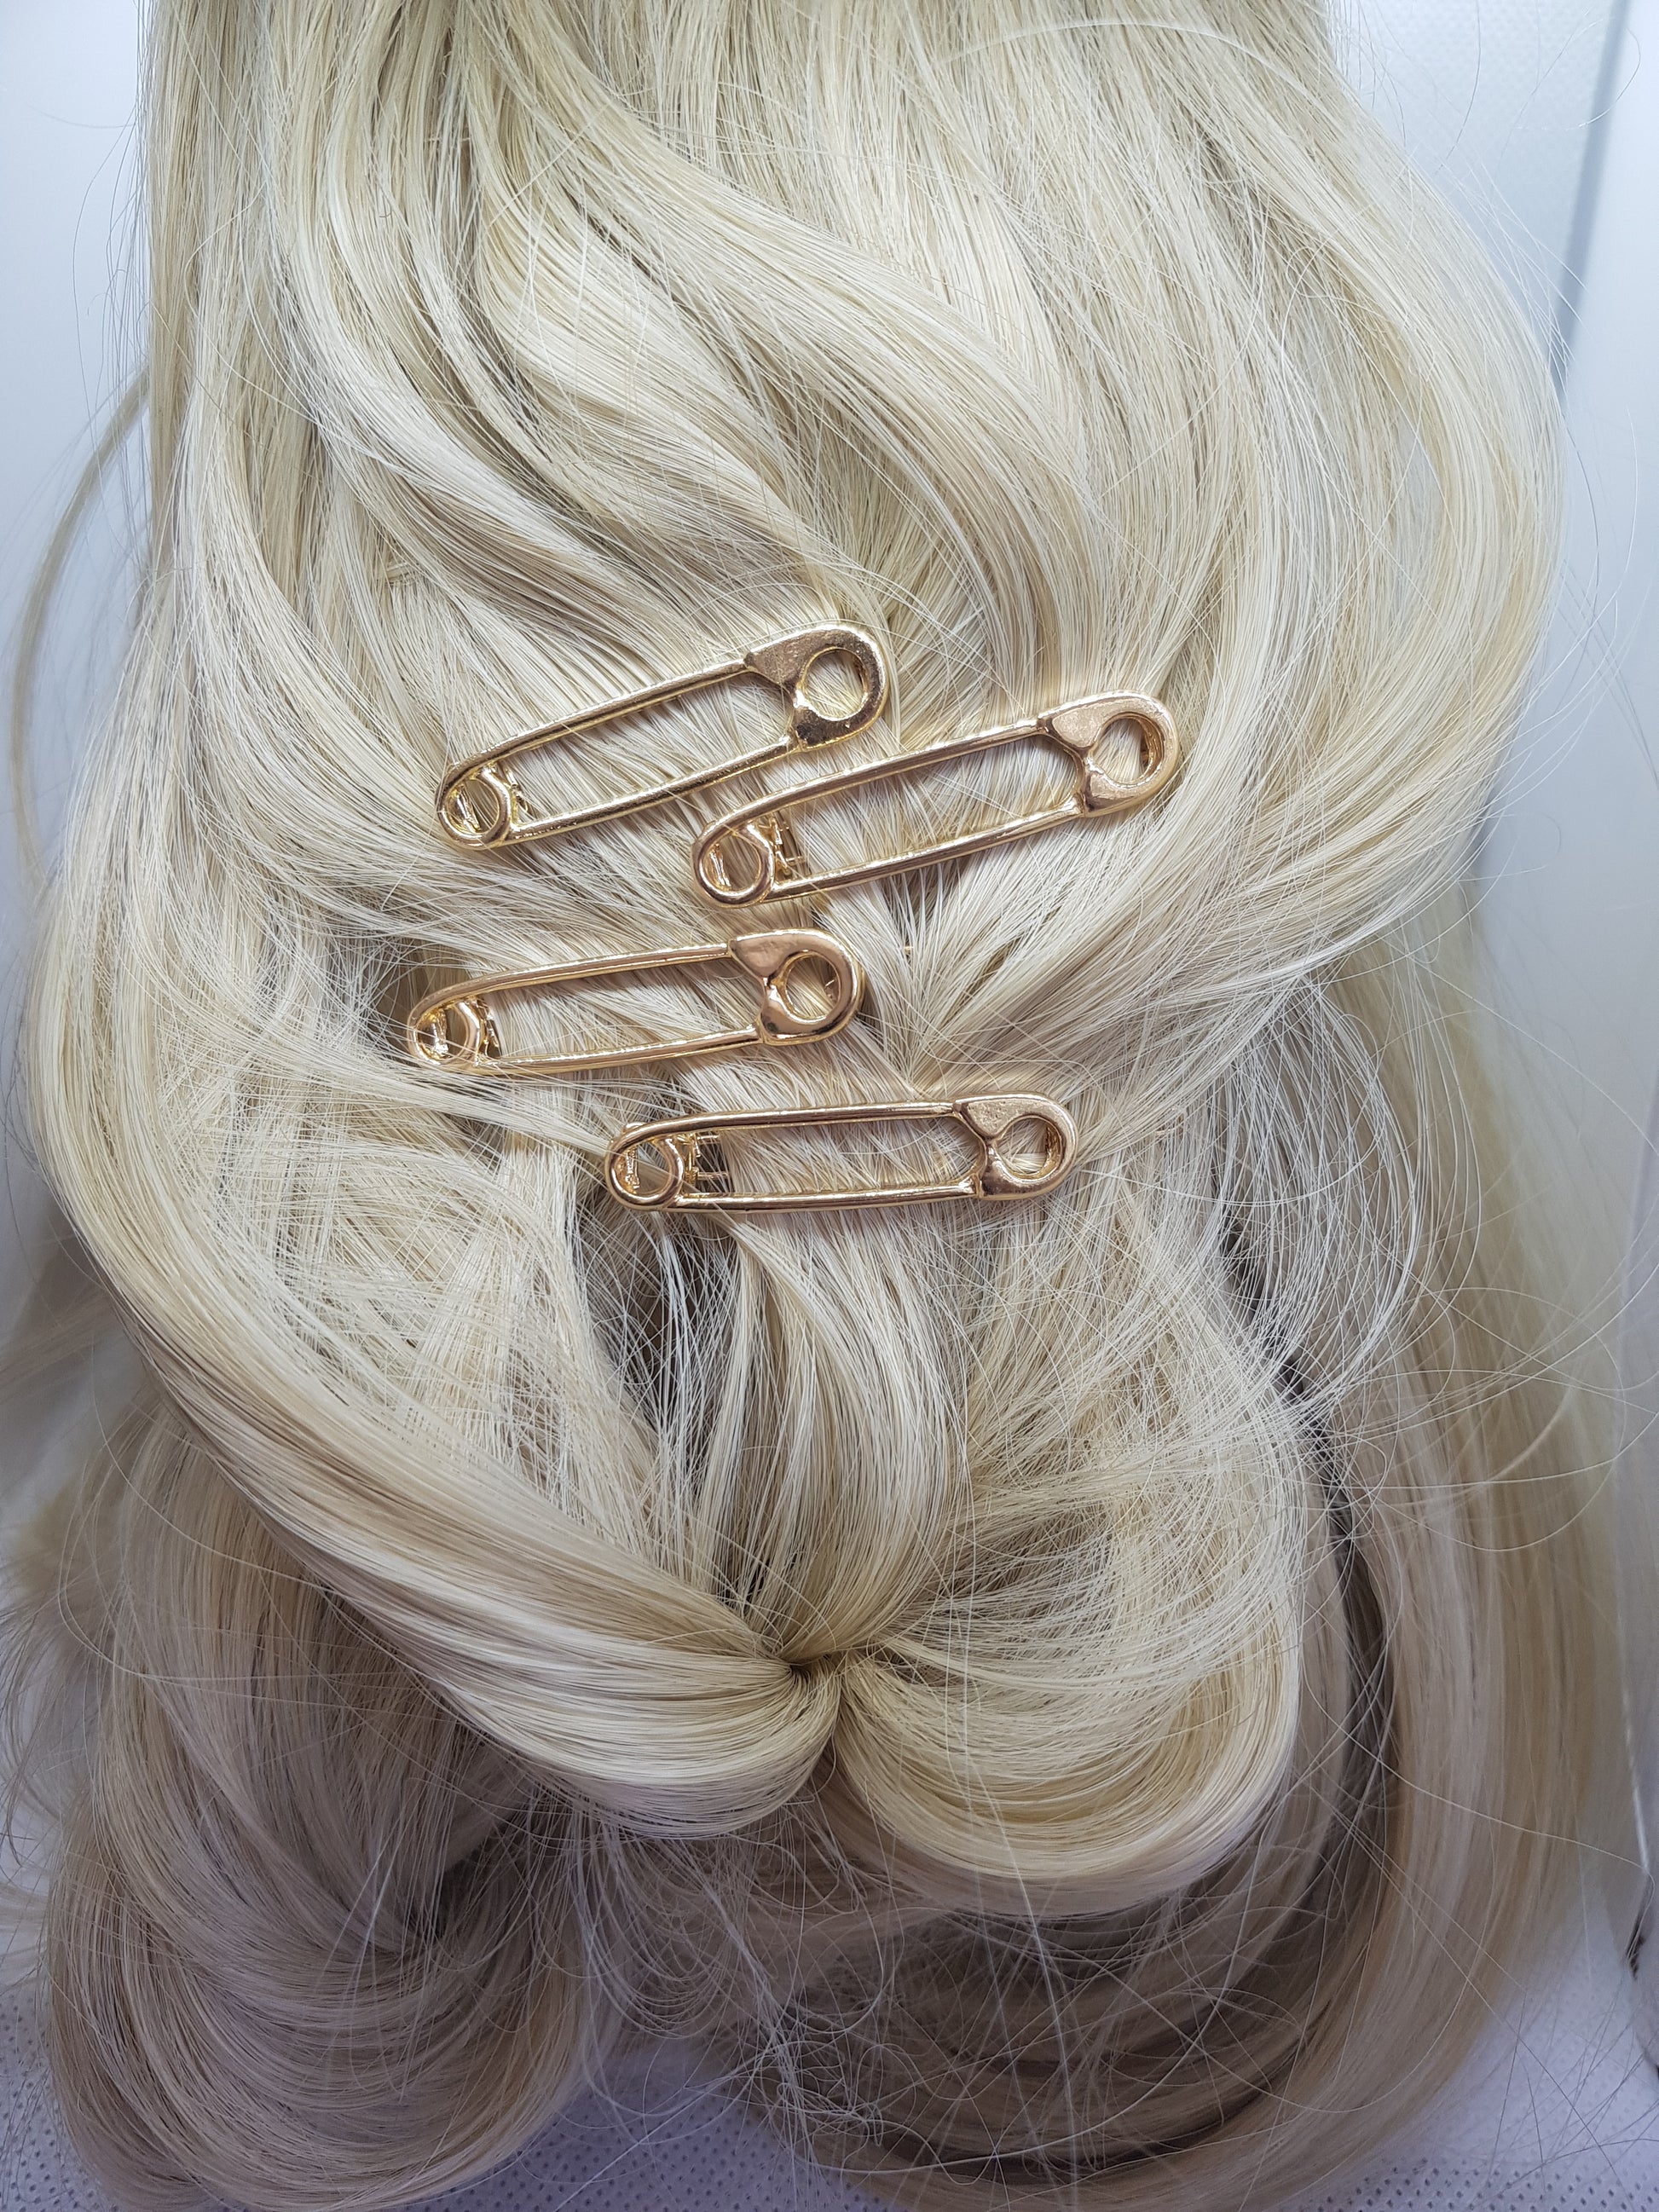 fun gold hair accessories